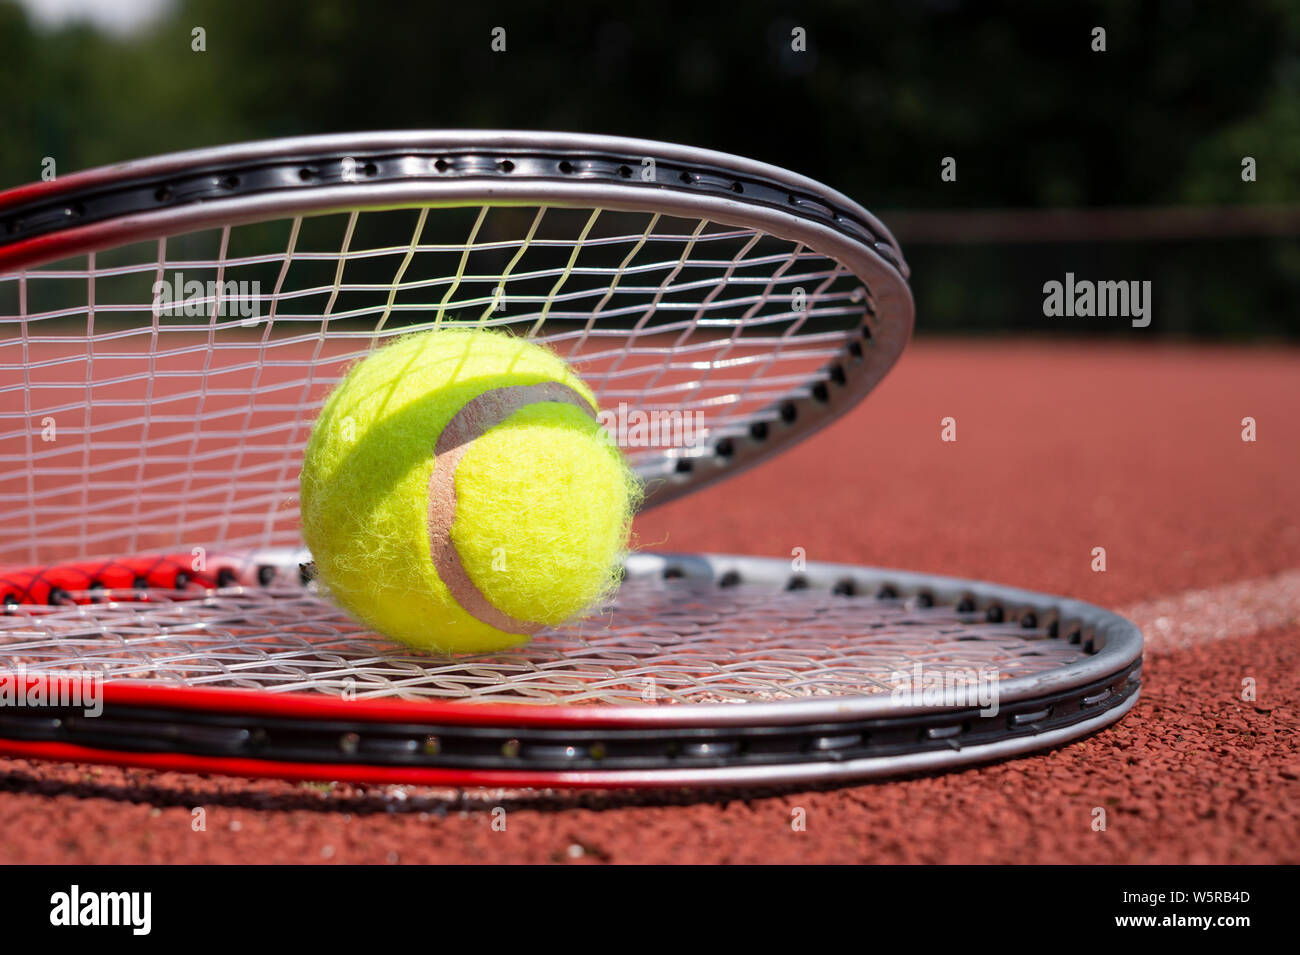 Balle de tennis reposant sur une raquette de tennis sur un disque rouge court, low angle view selective focus Banque D'Images